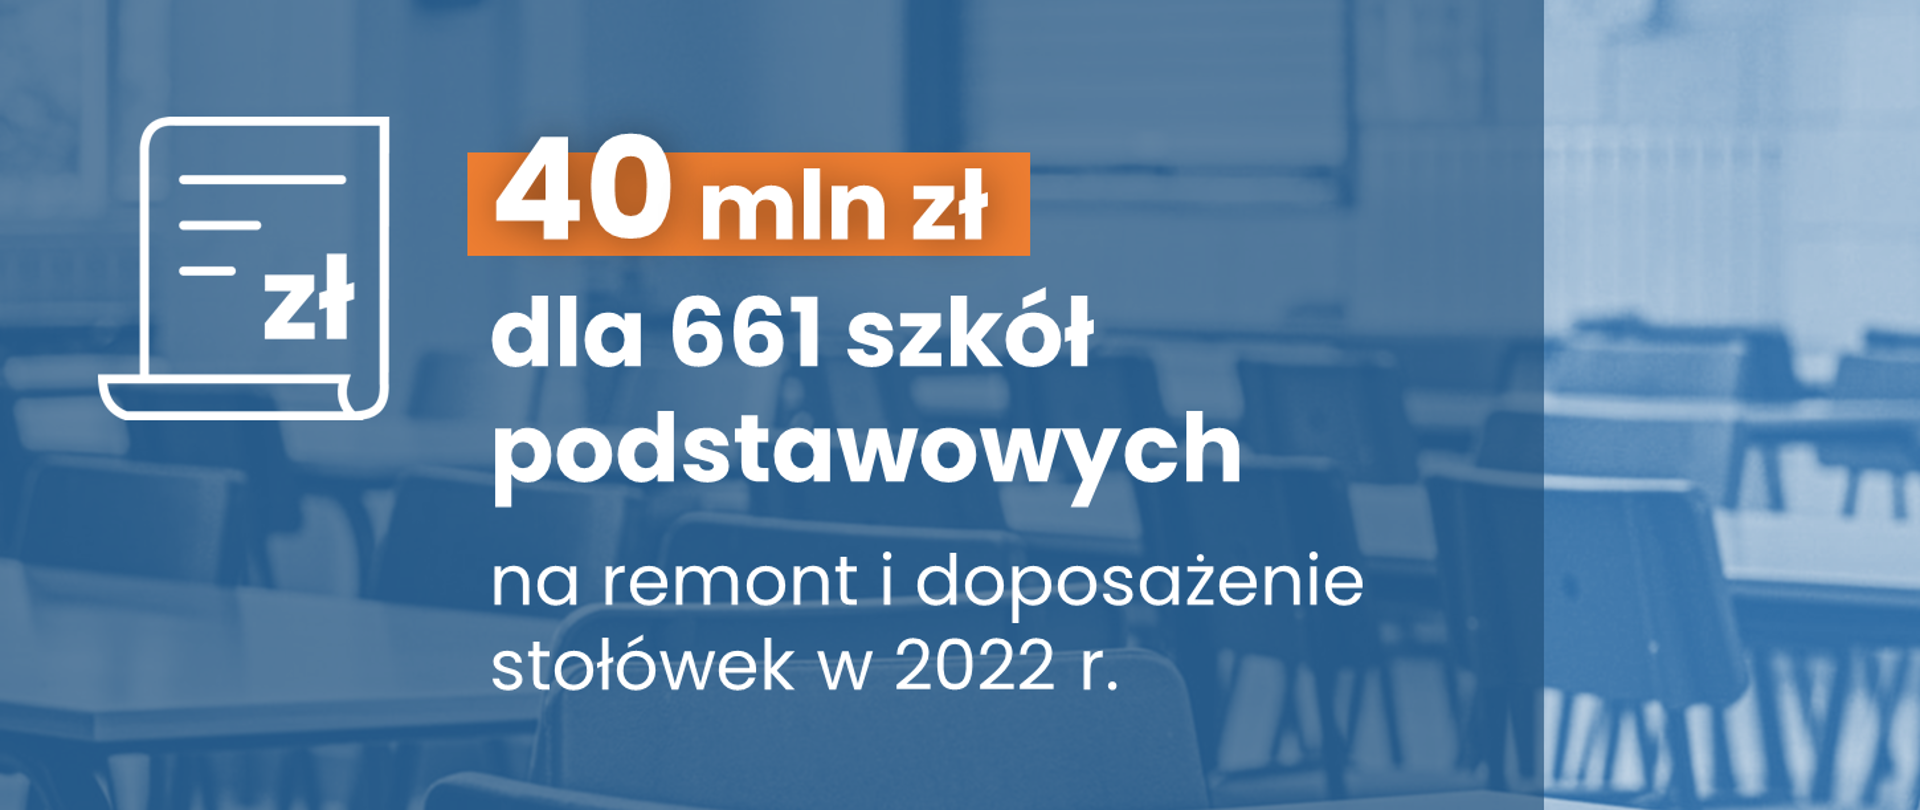 Szkoły podstawowe na remont i doposażenie stołówek oraz jadalni otrzymają kolejne 40 mln zł